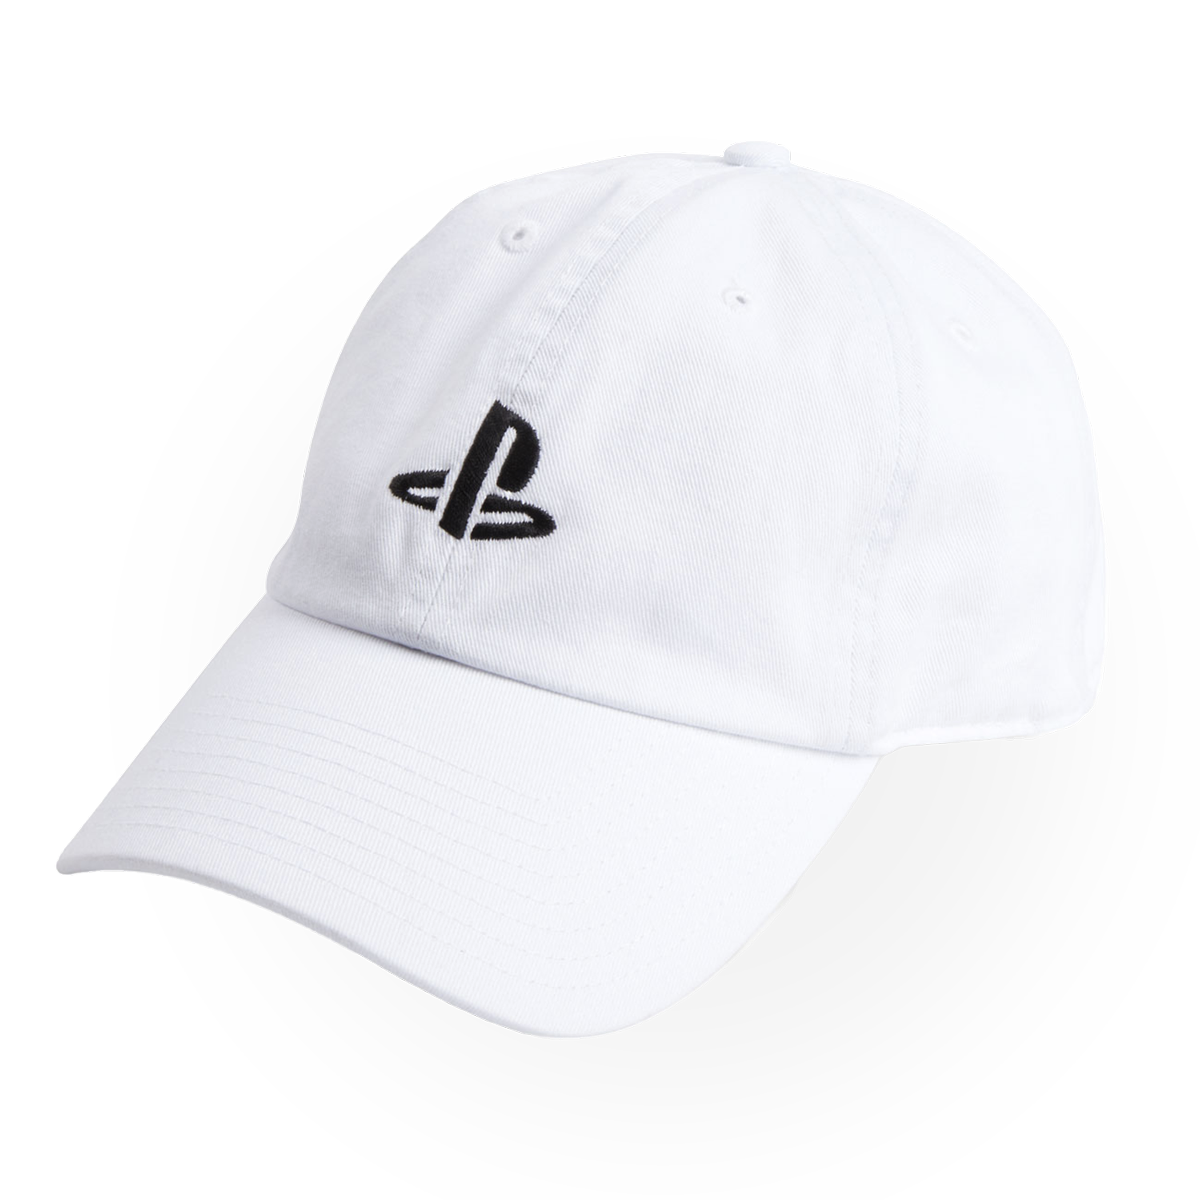 PS Gear - casquette avec le logo PlayStation